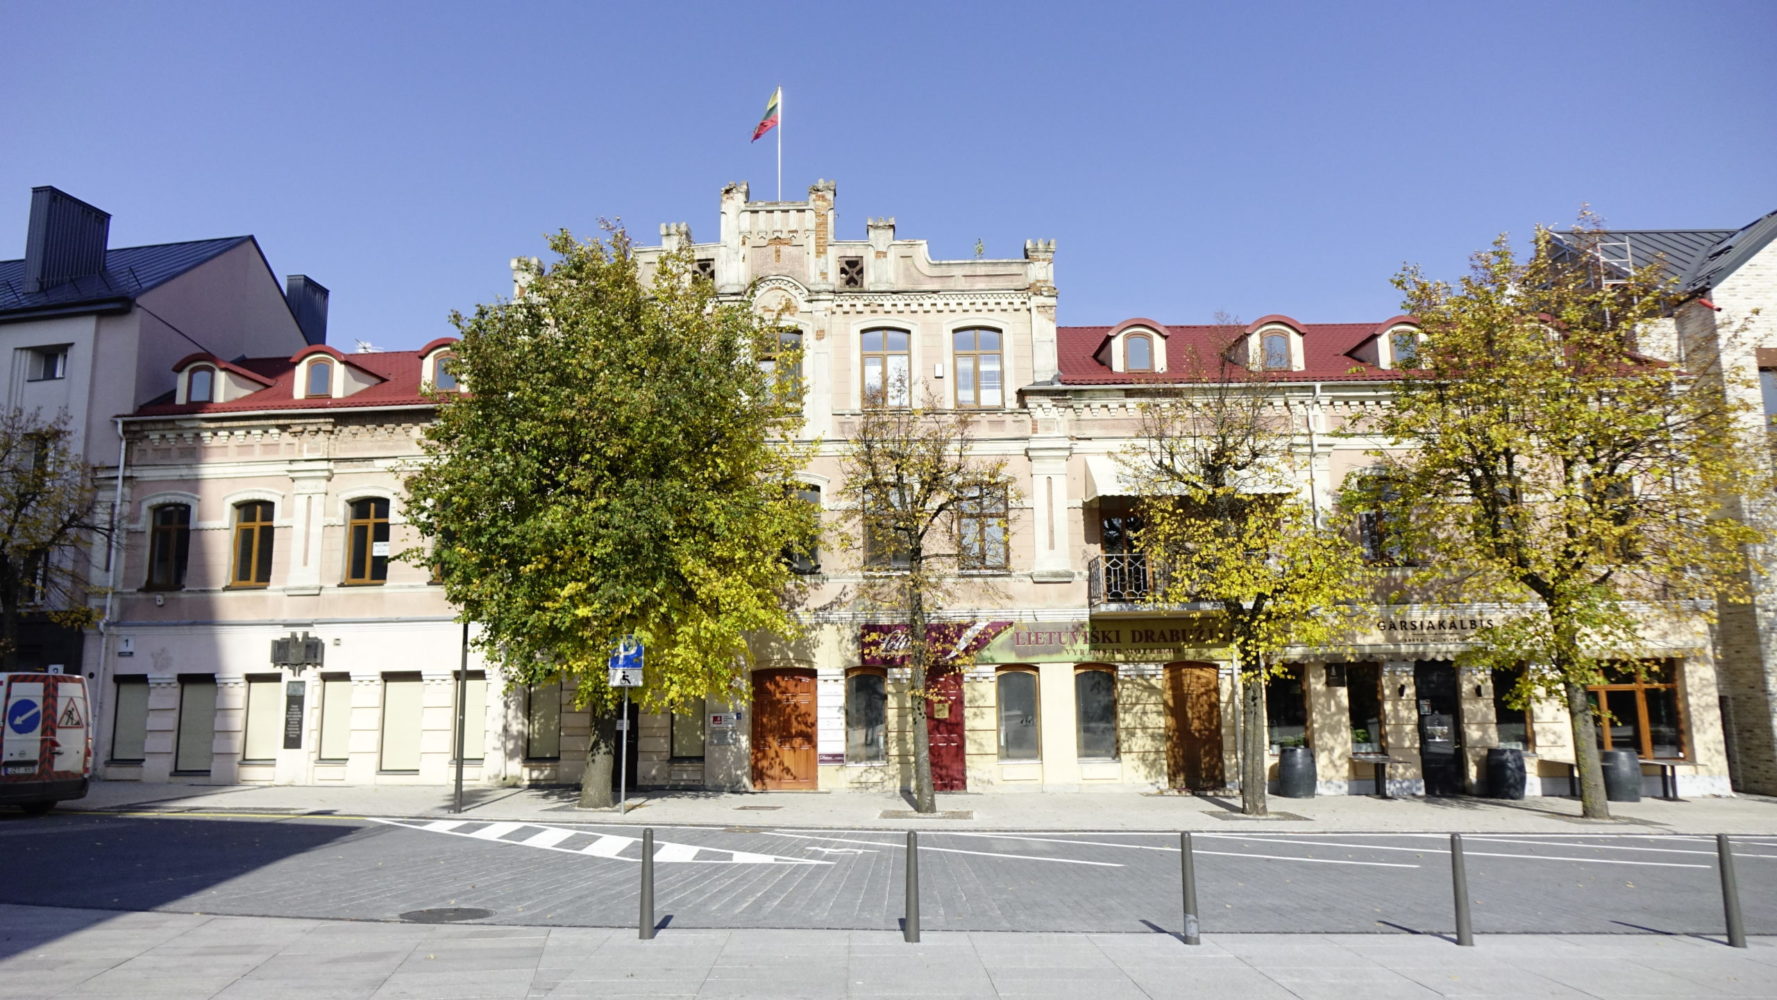 Michaelio Rosako namas Laisvės a., ant kurio 1919 m. iškelta Lietuvos valstybinė vėliava. 2021. Giedriaus Zauros nuotrauka